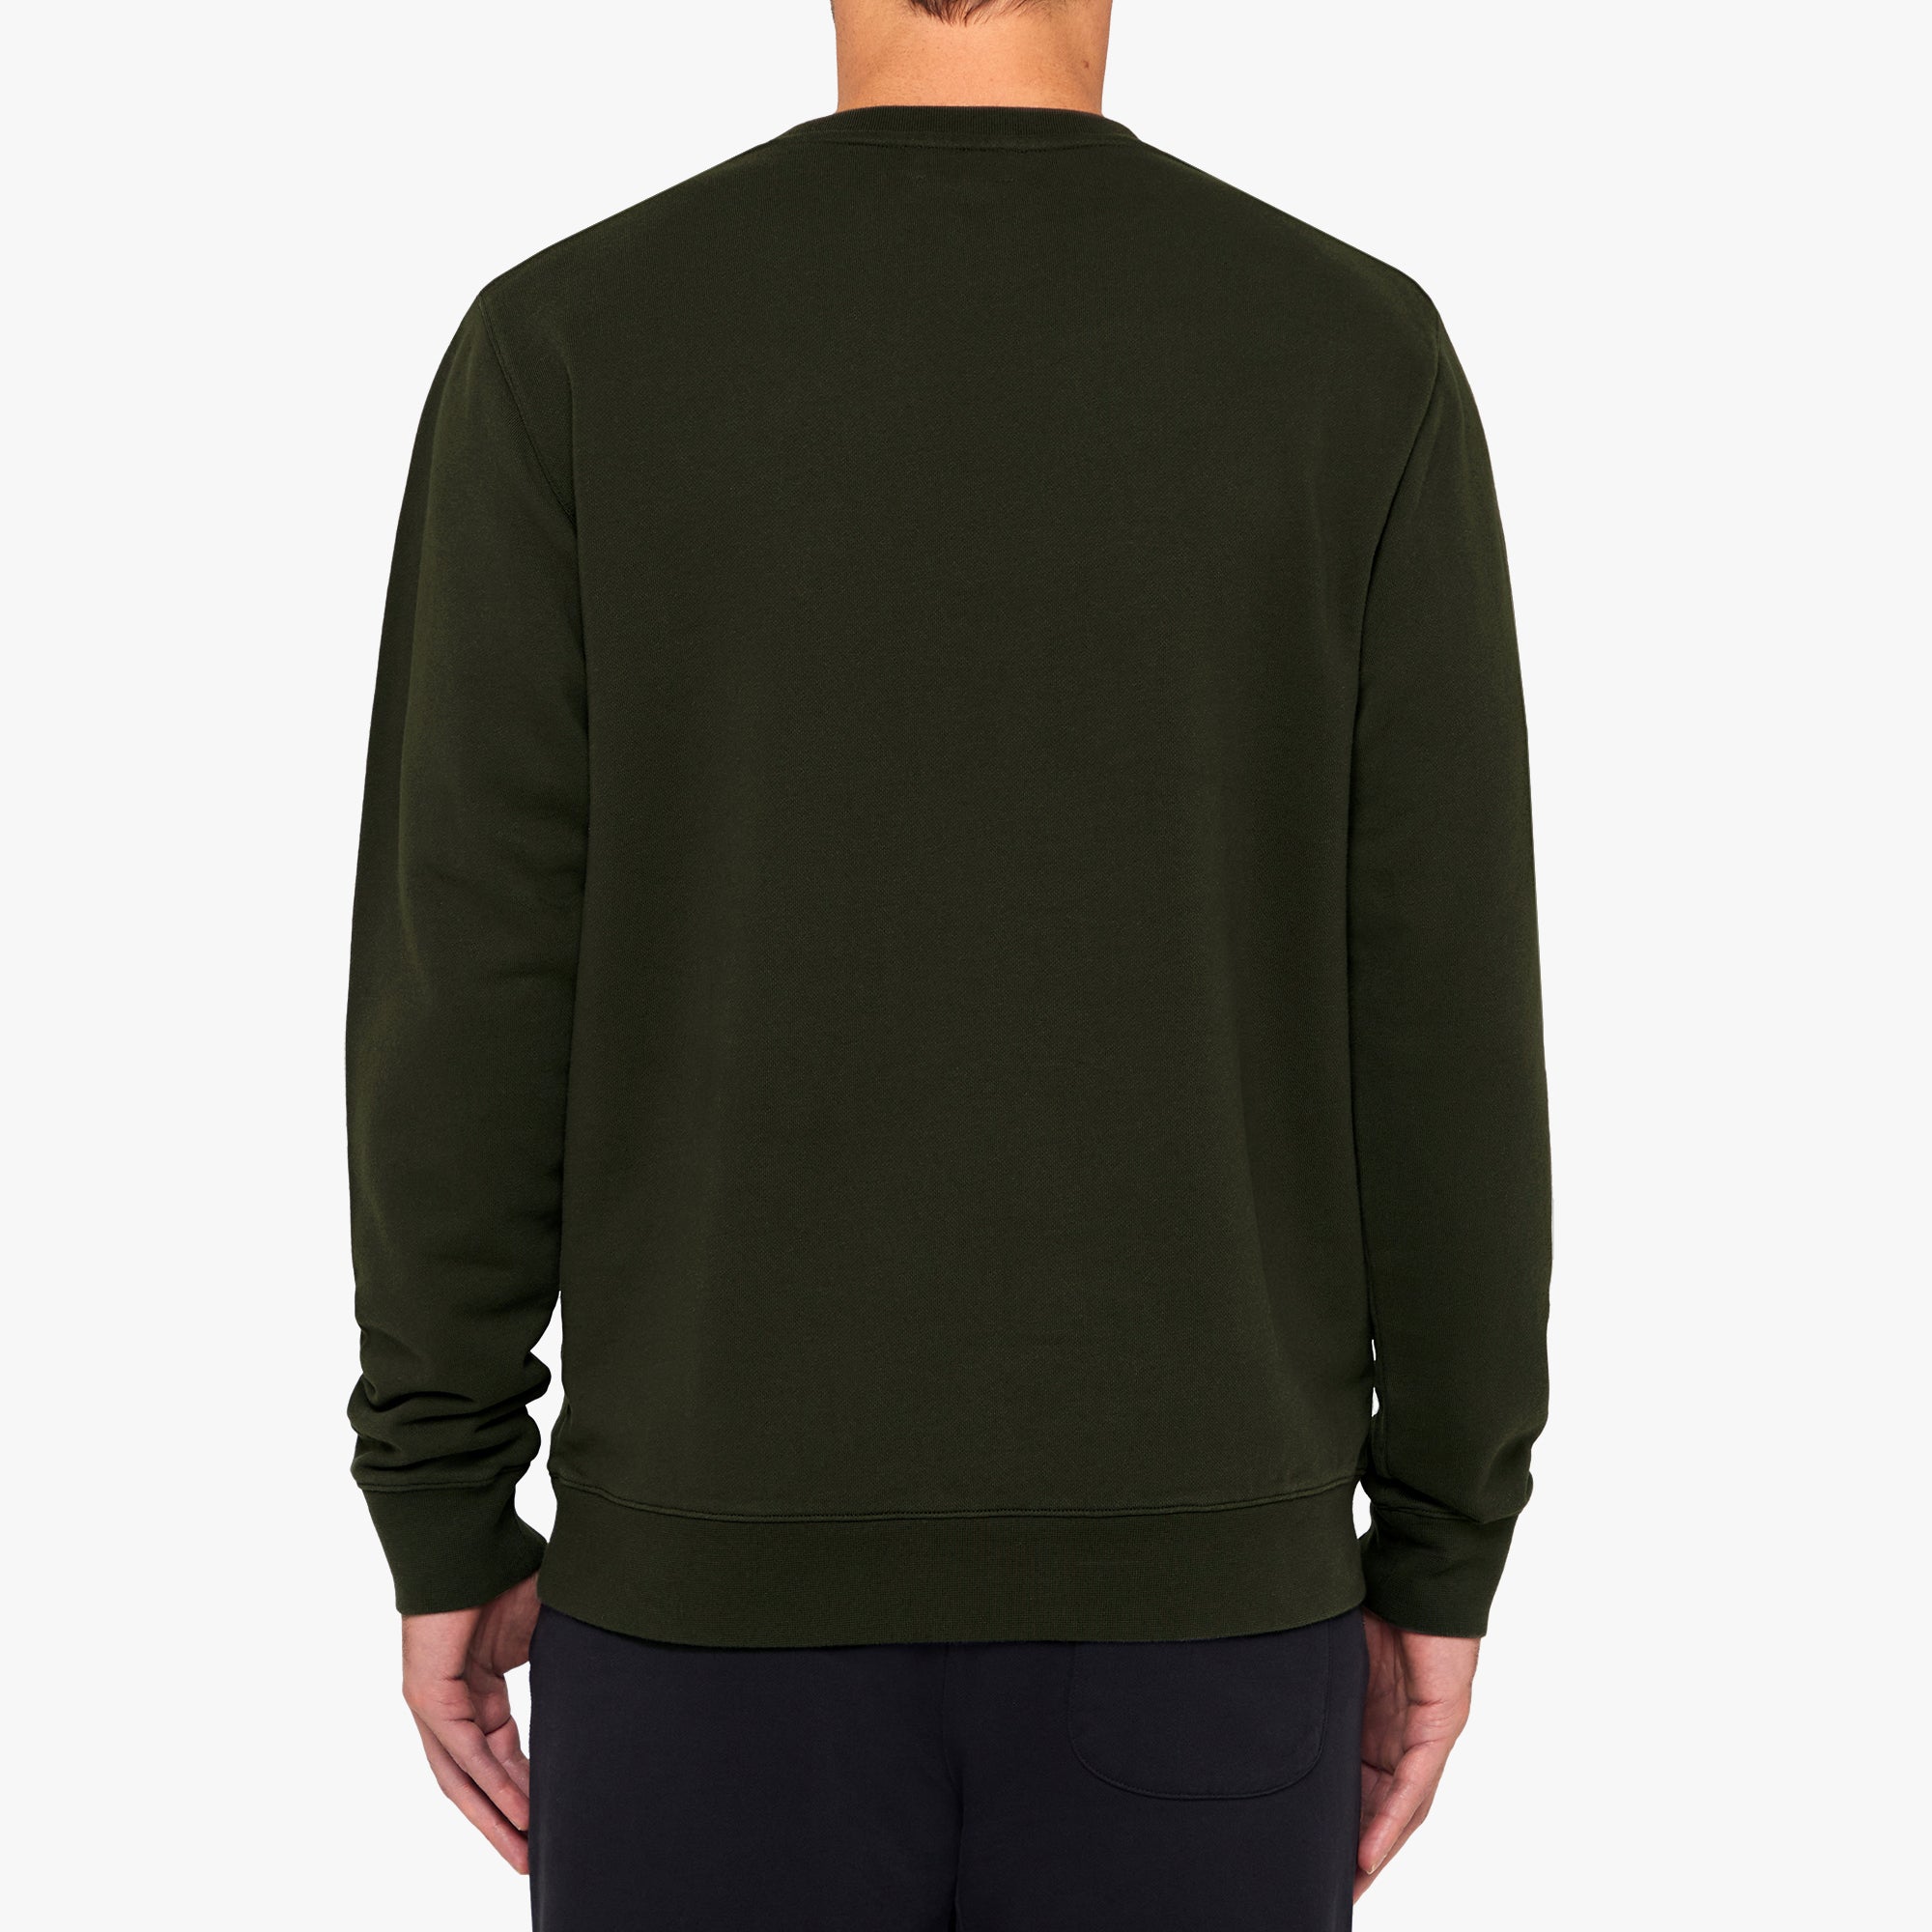 Organic Cotton Fleece Sweatshirt Military